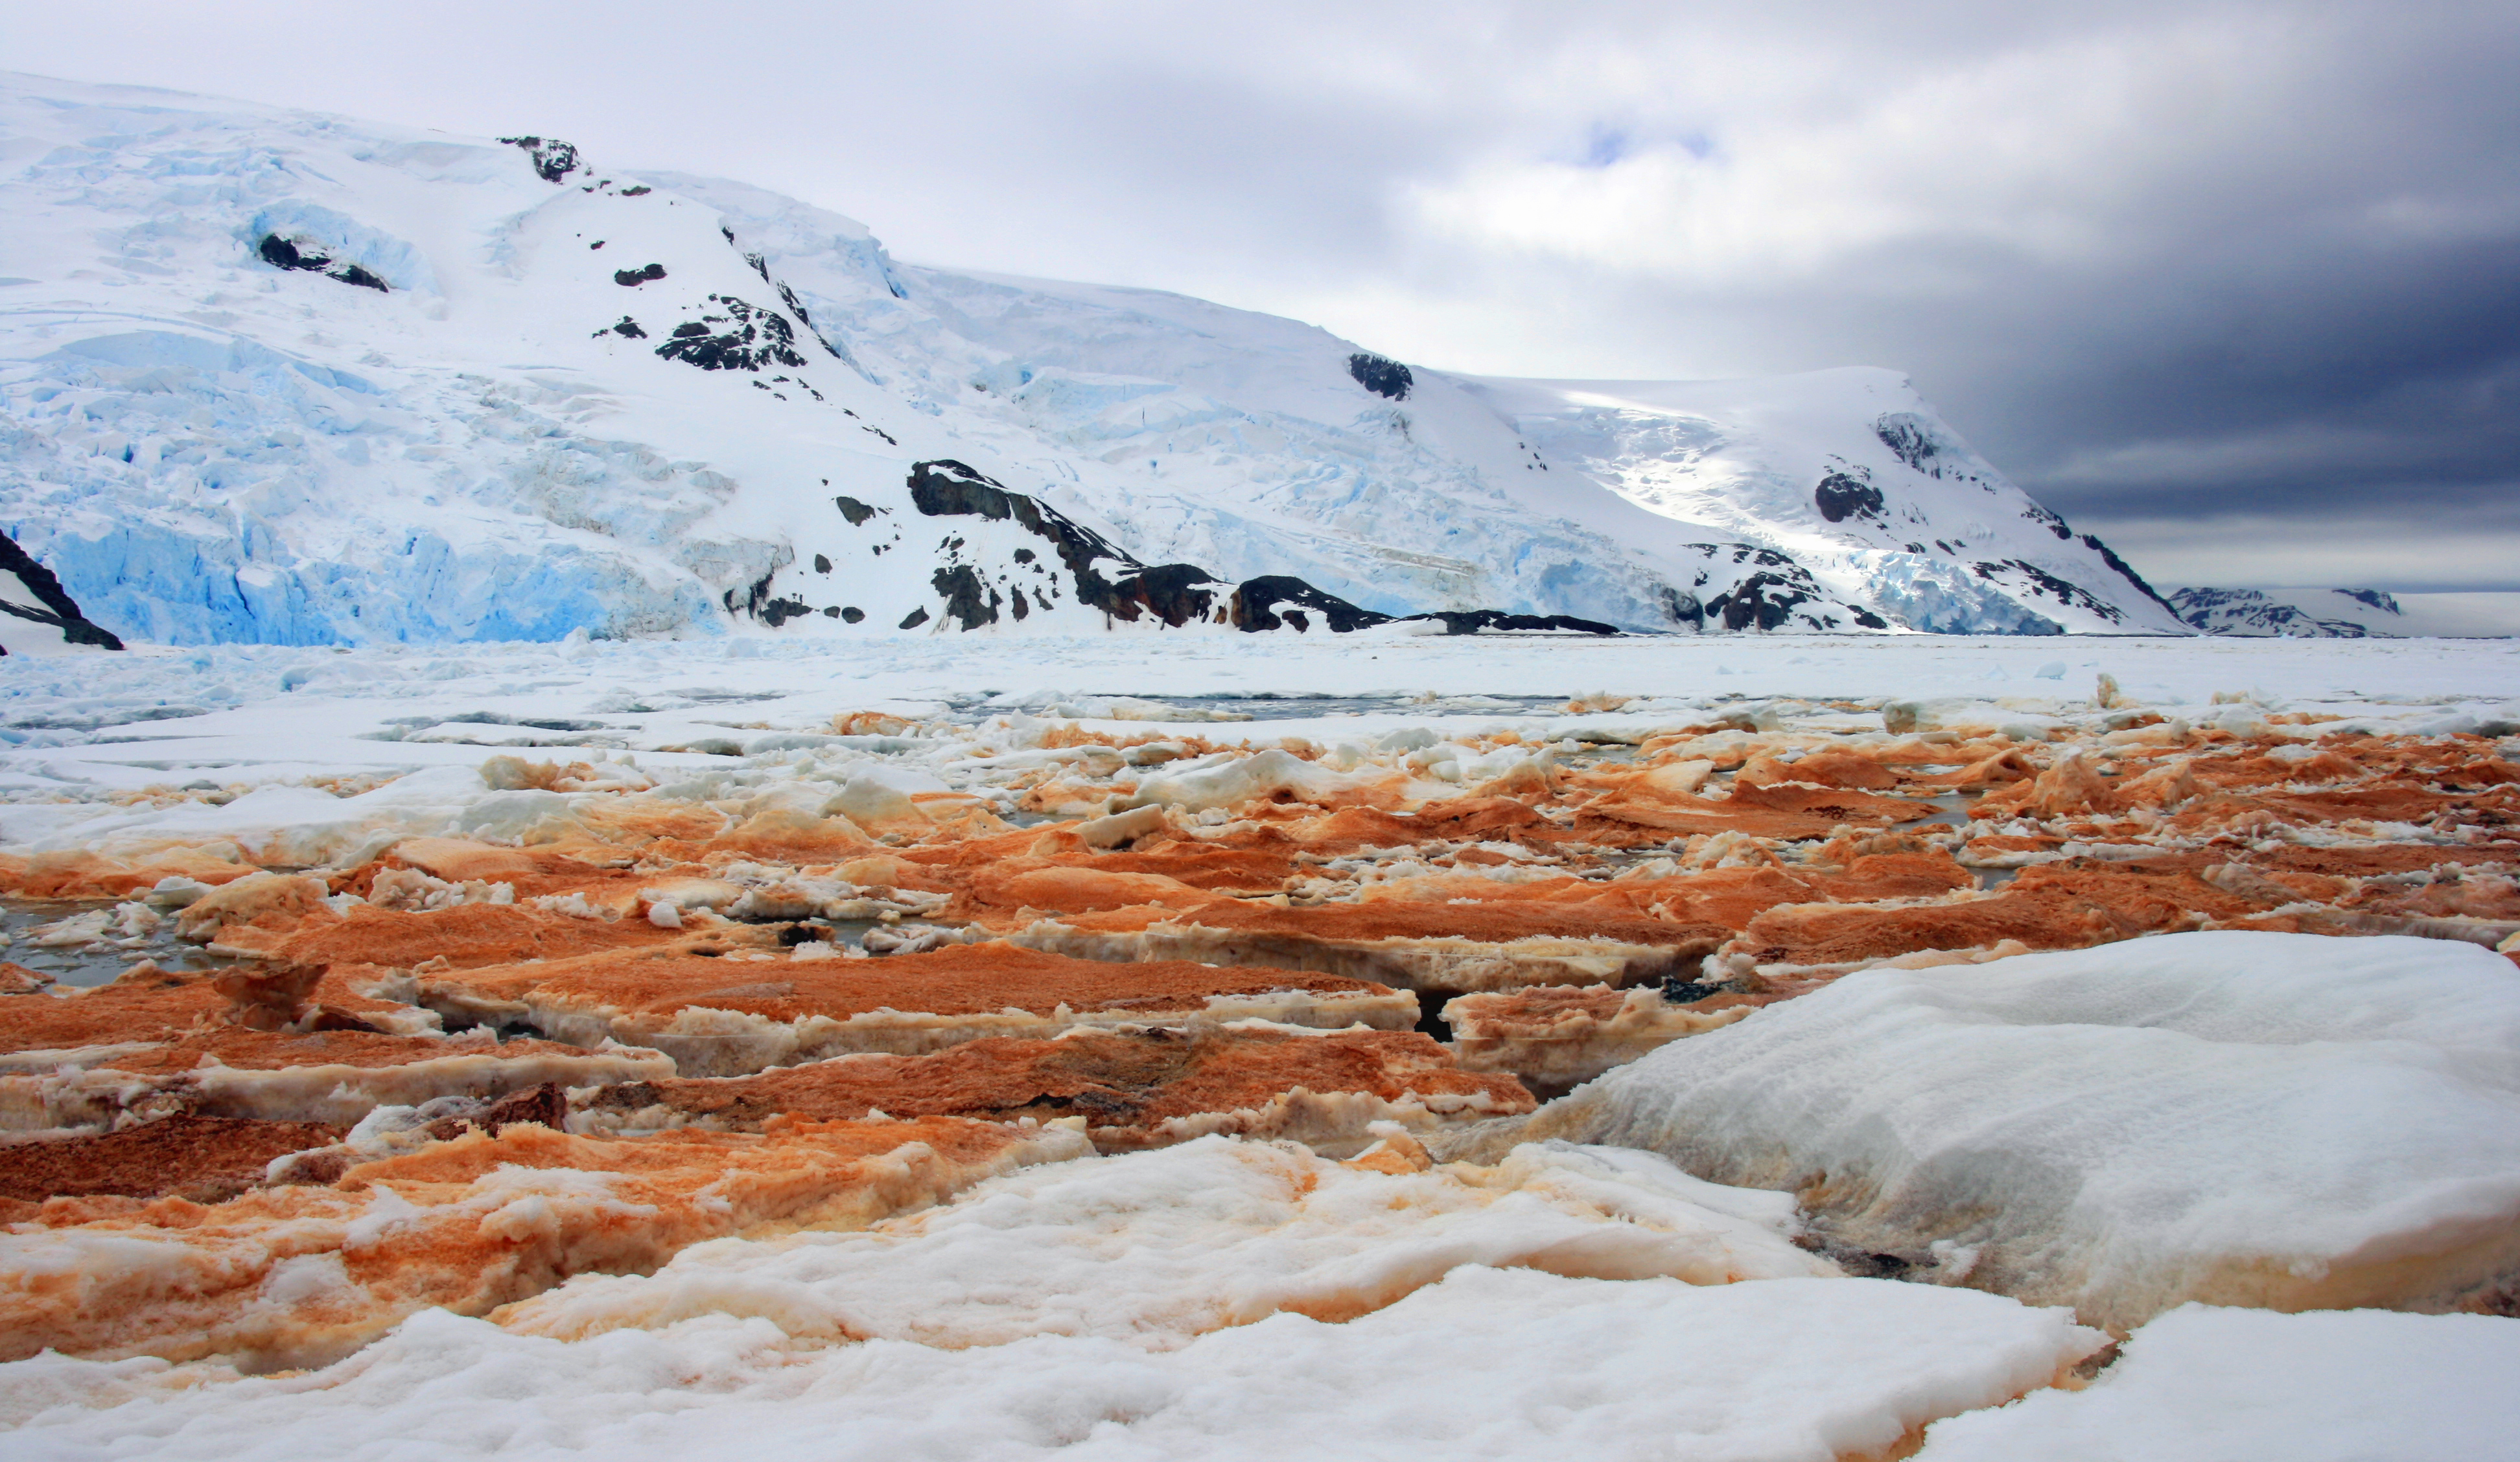 Mons de gel: l’Antàrtida. Així és la platja de la badia Almirallat a l’illa del Rei Jordi (illes Shetland del sud, Antàrtida). El color vermellós és degut a la presència d’hidròxids de ferro que provenen del continent. L’aigua és àcida i el fred intens, però aquí hi viu una notable diversitat d’organismes extremòfils que utilitzen certes formes de ferro com a font d’energia.